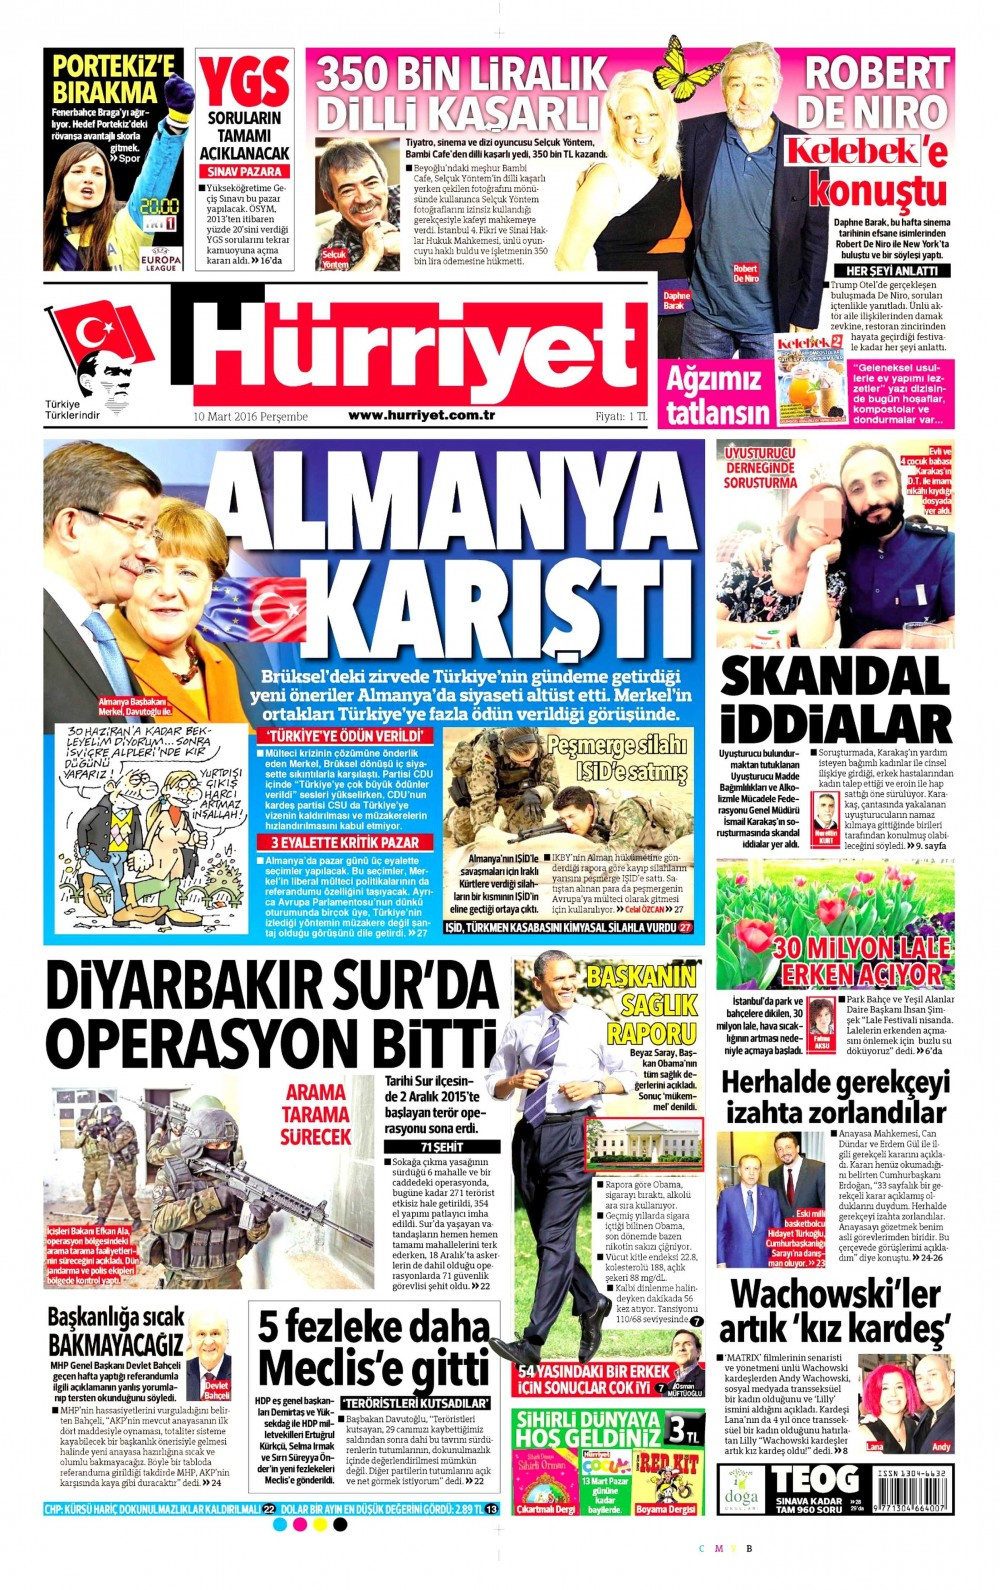 Gazete manşetleri Hürriyet - Milliyet ve Habertürk ne yazdı?